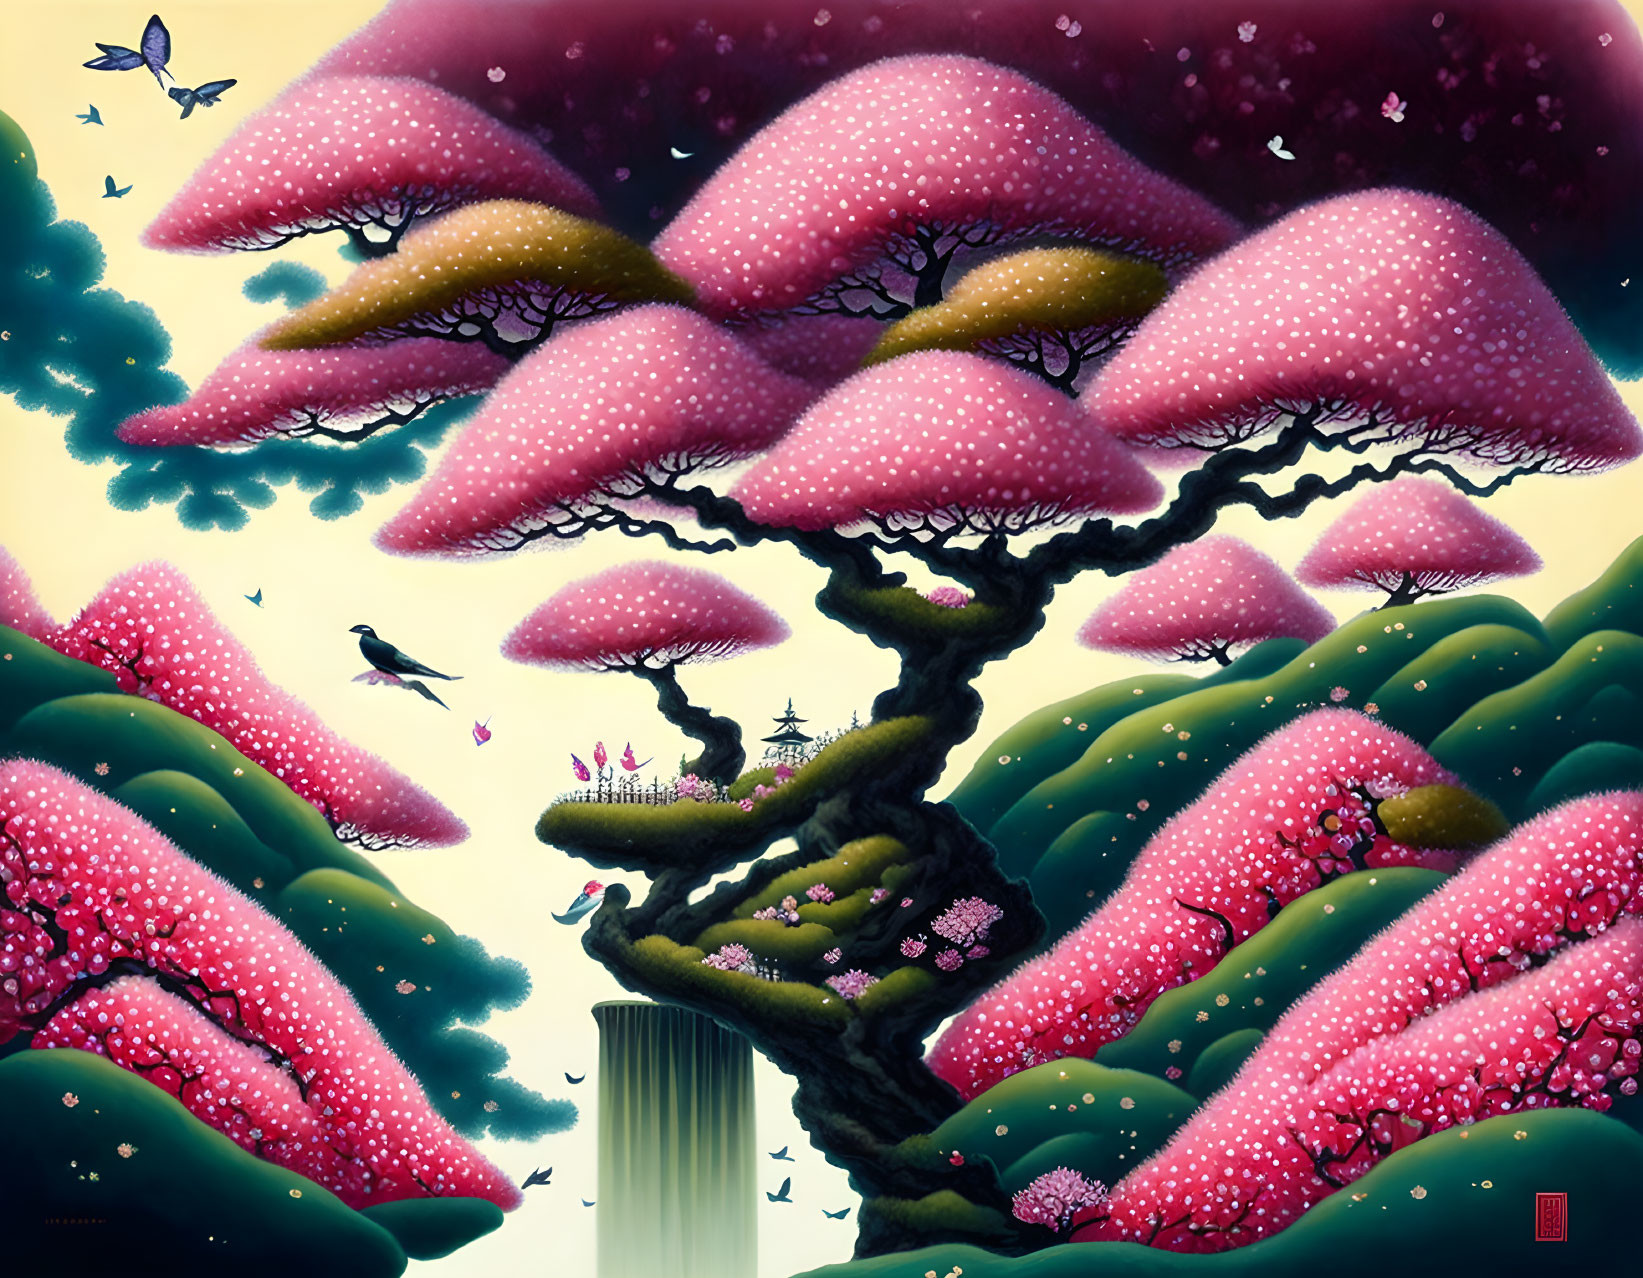 Whimsical artwork of pink mushroom tree in fantastical landscape